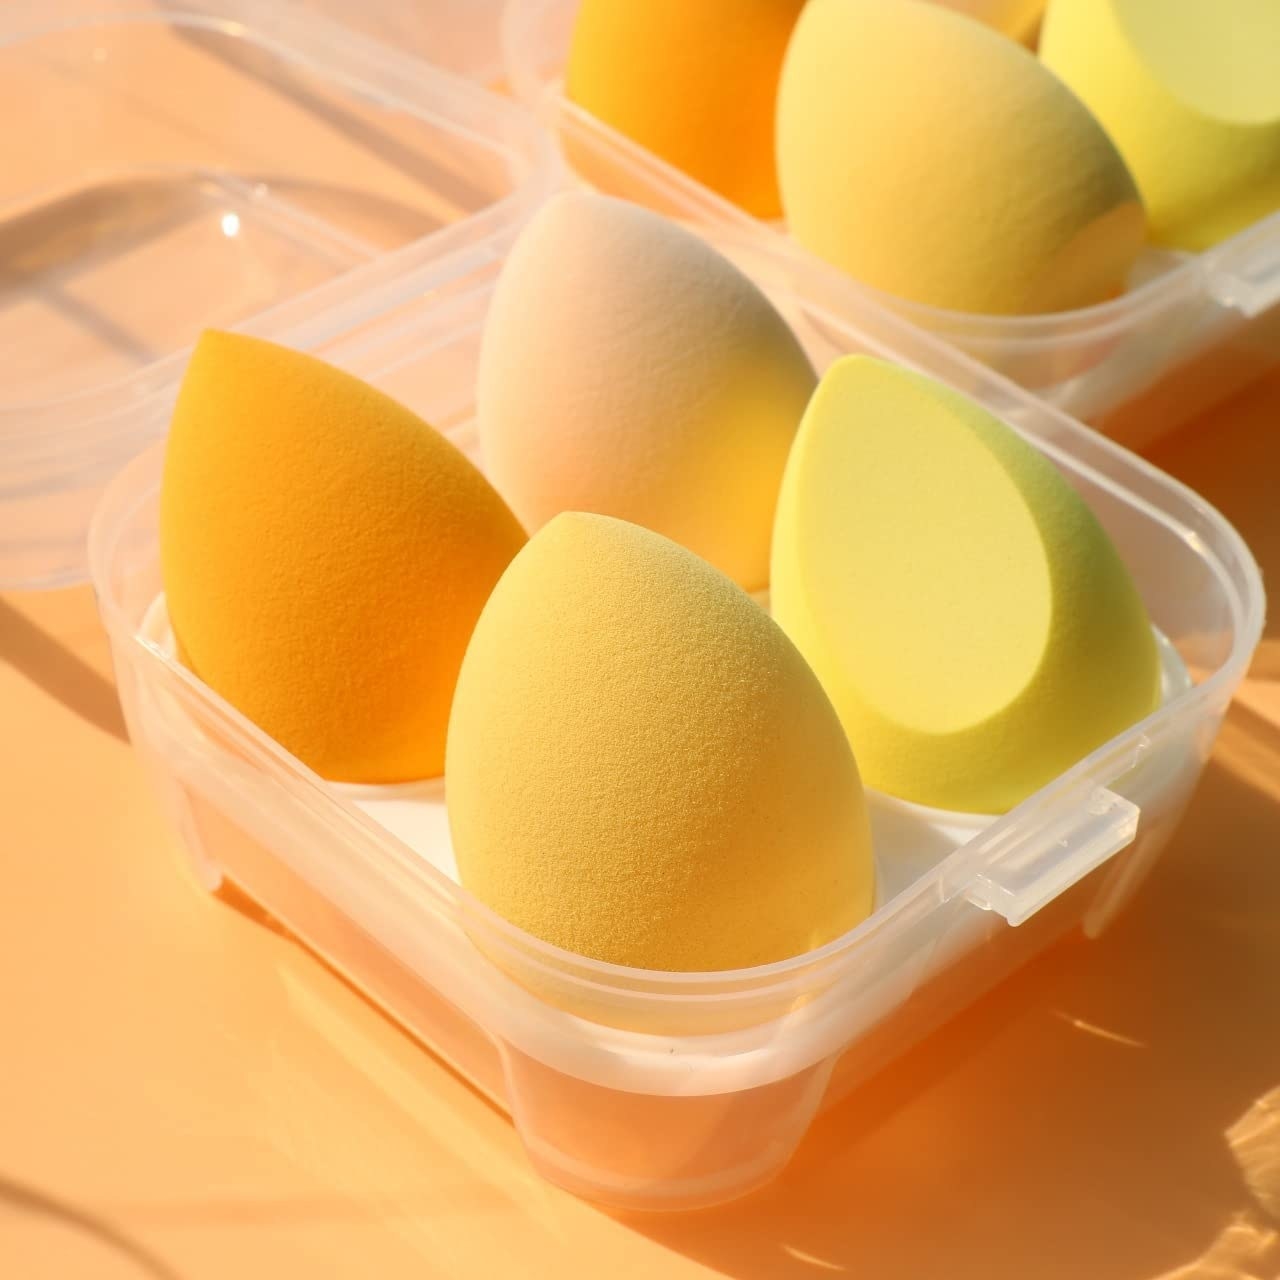 a set of makeup sponges inside a storage case shaped like an egg carton